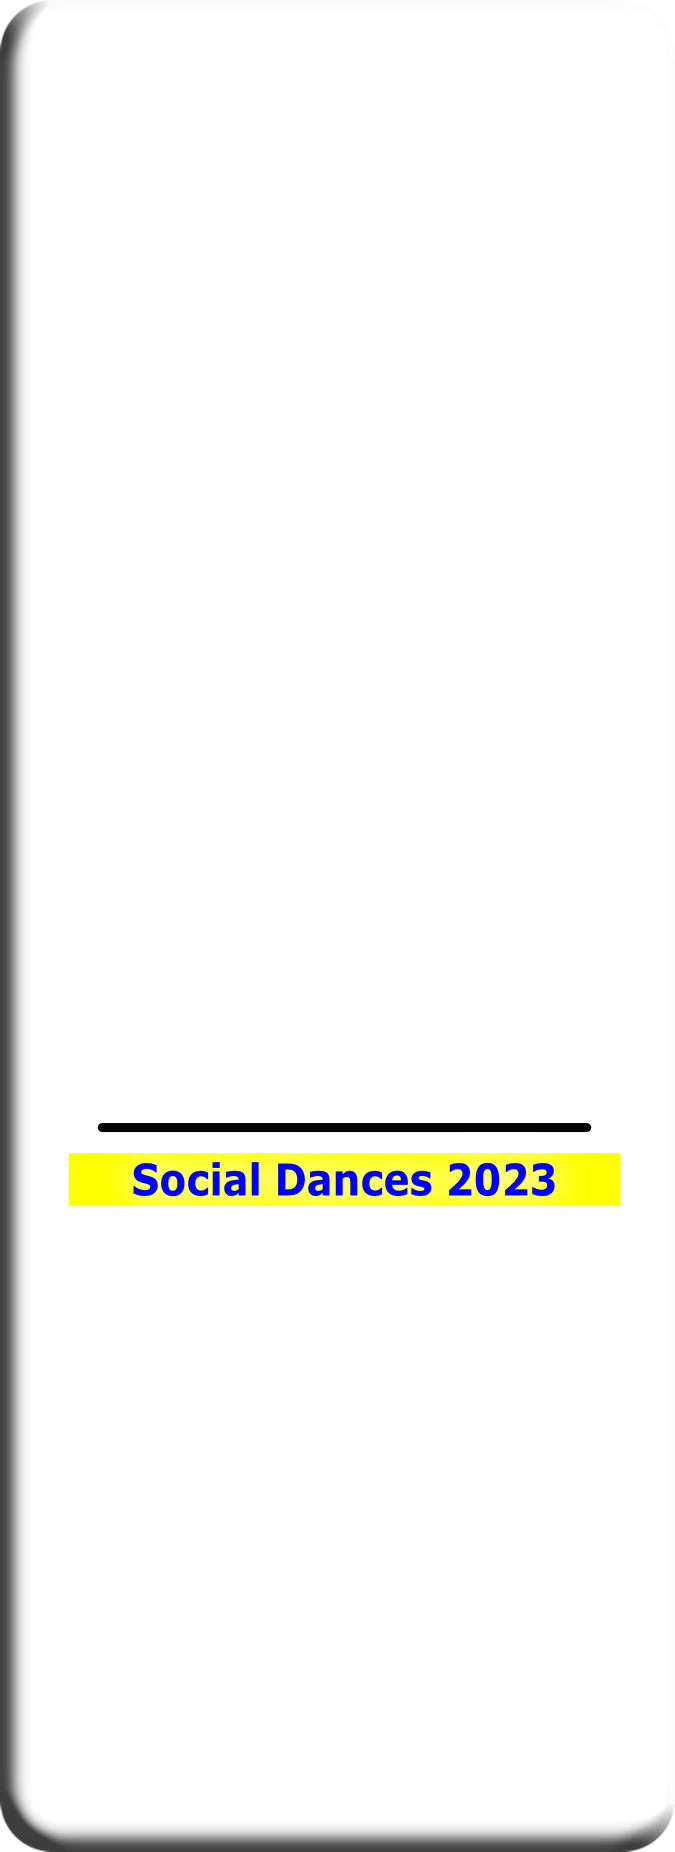 Social Dances 2023
